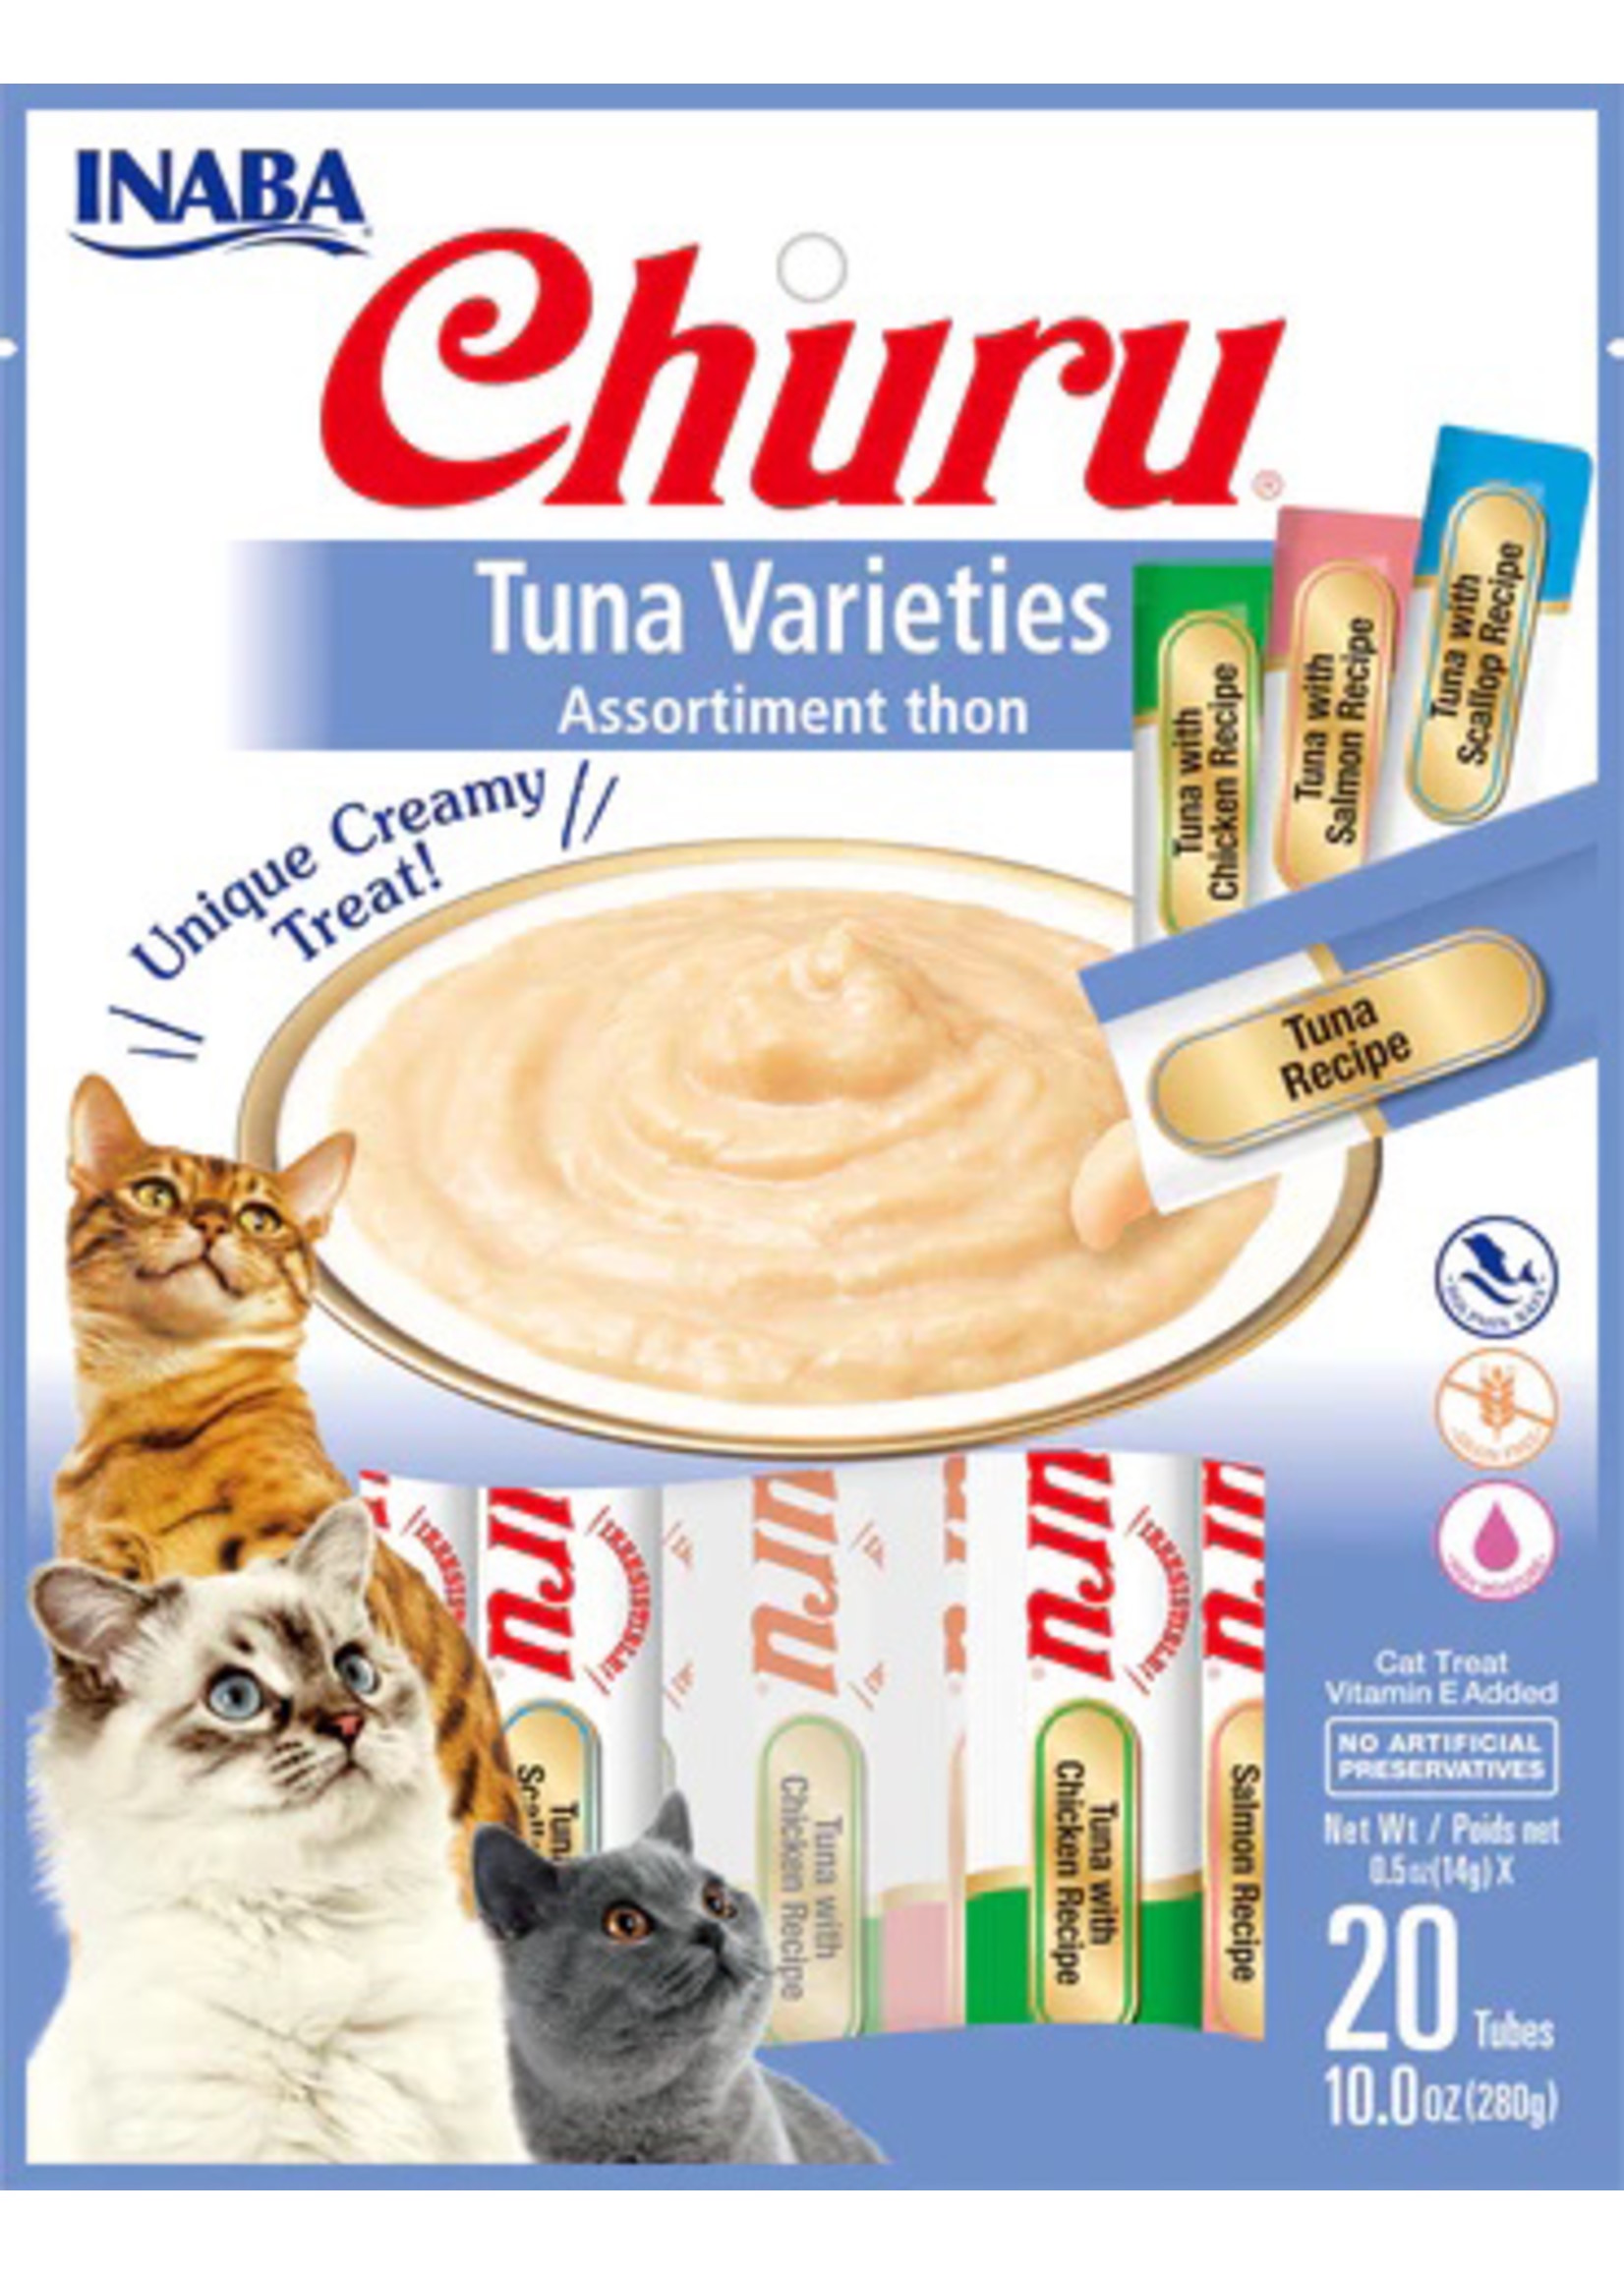 Churu Creamy Cat Treats Tuna Variety